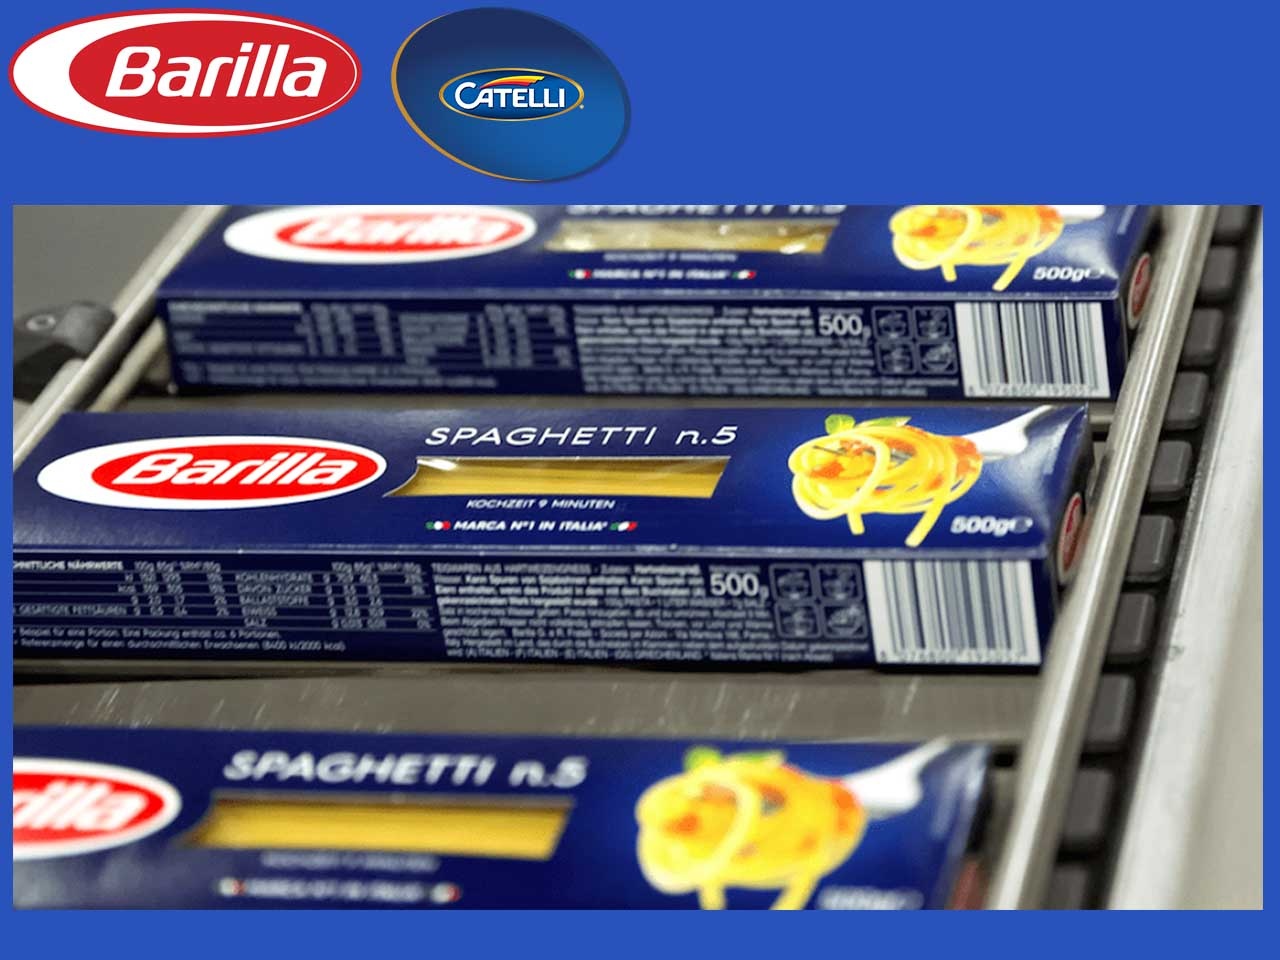 Le groupe Barilla acquiert l’entreprise canadienne Catelli, spécialisée dans la fabrication de ptes sèches